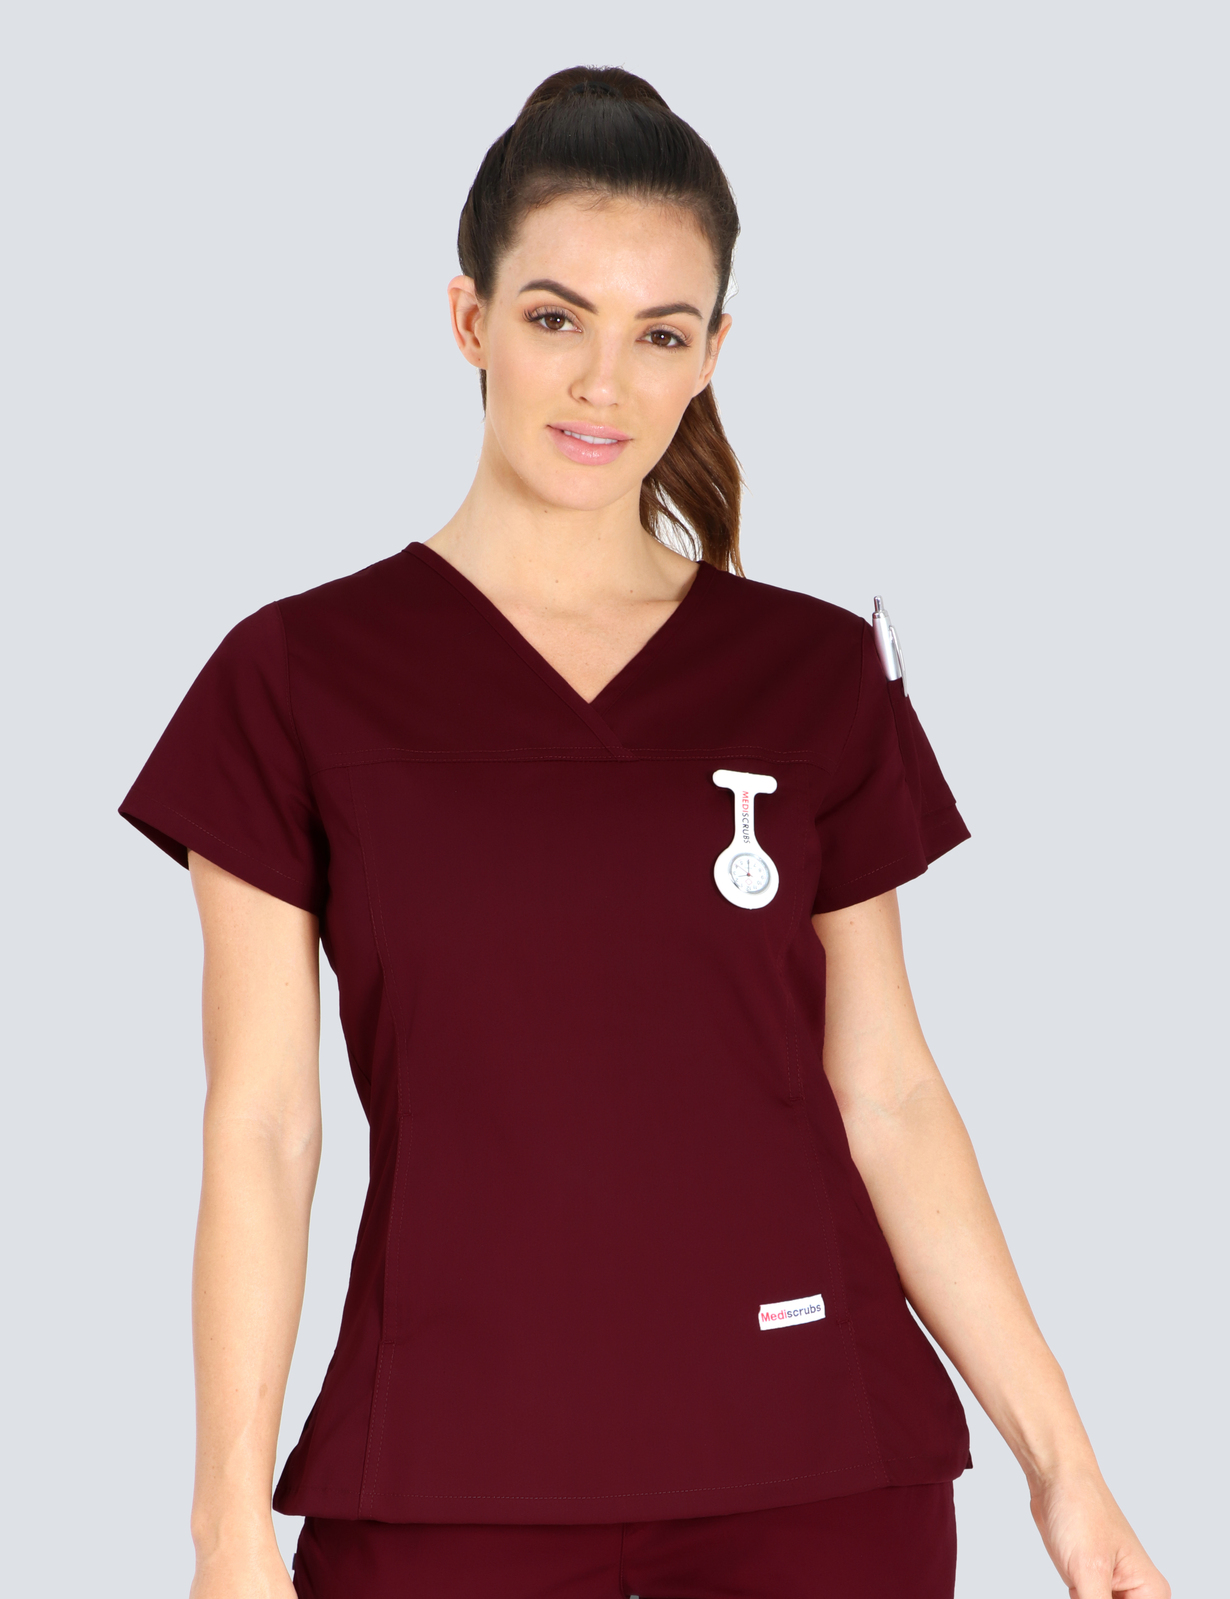 Queensland Children's Hospital Emergency Department Registrar Uniform Top Bundle  (Women's Fit Top in Burgundy  incl Logos)